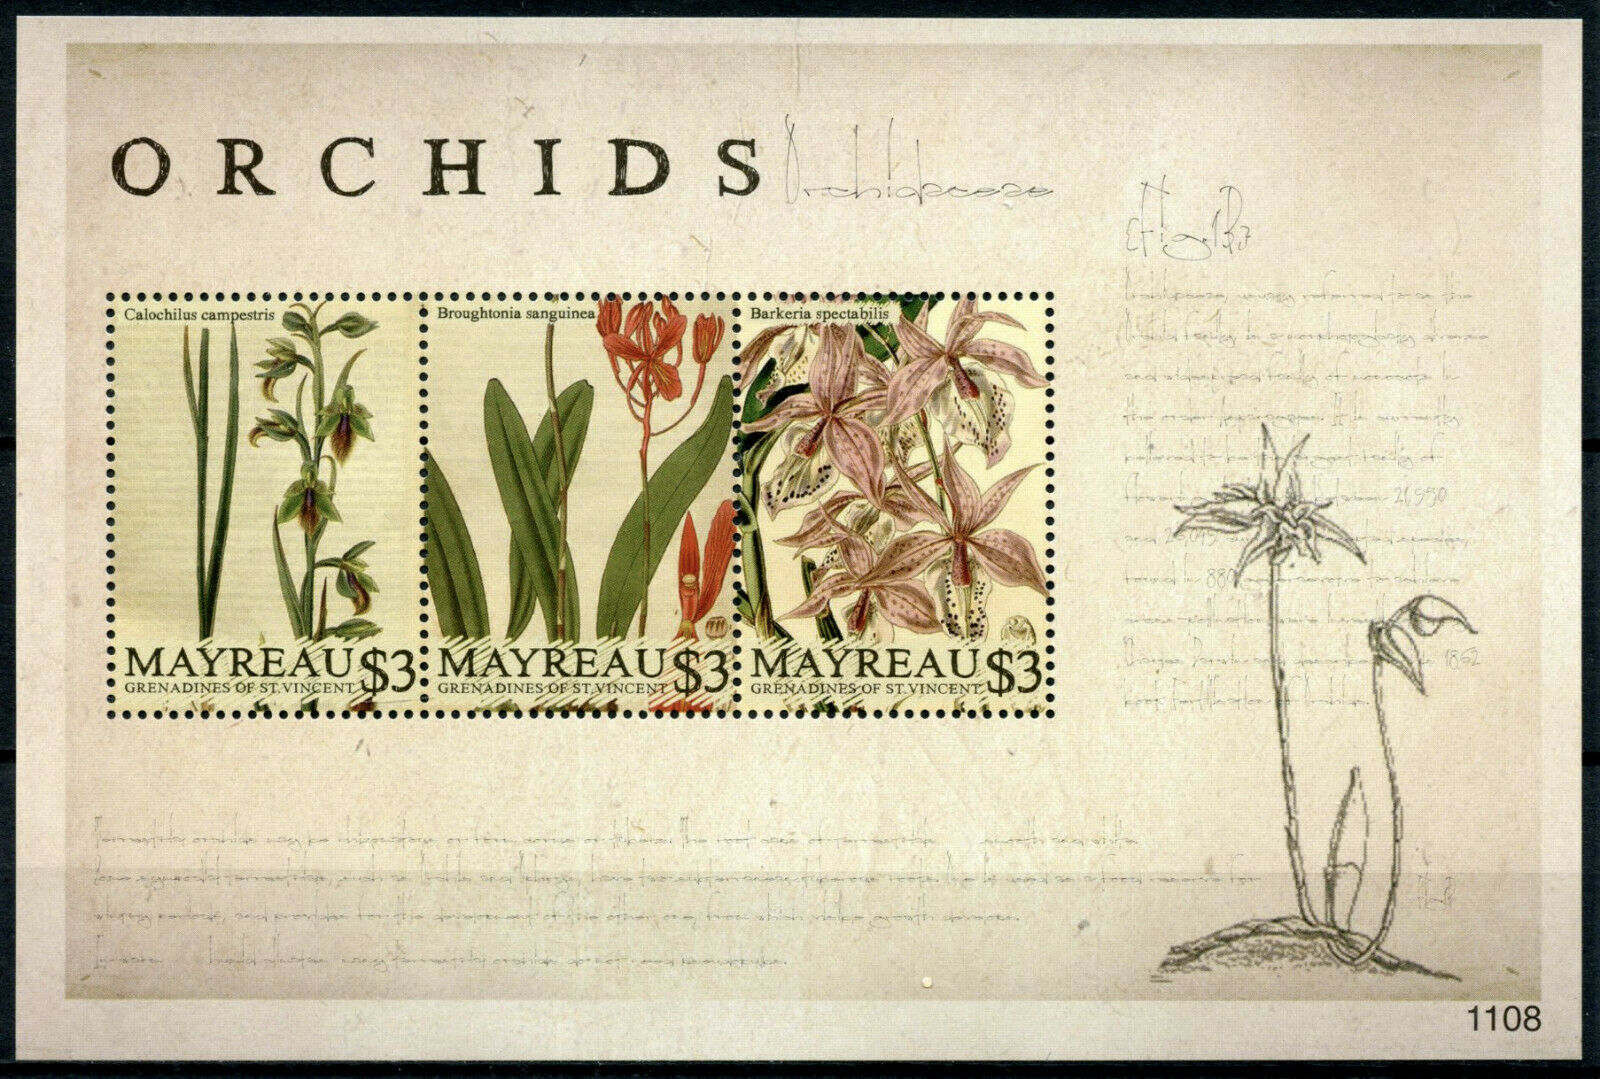 Mayreau Grenadines St Vincent Flowers Stamps 2011 MNH Orchids Flora 3v M/S I